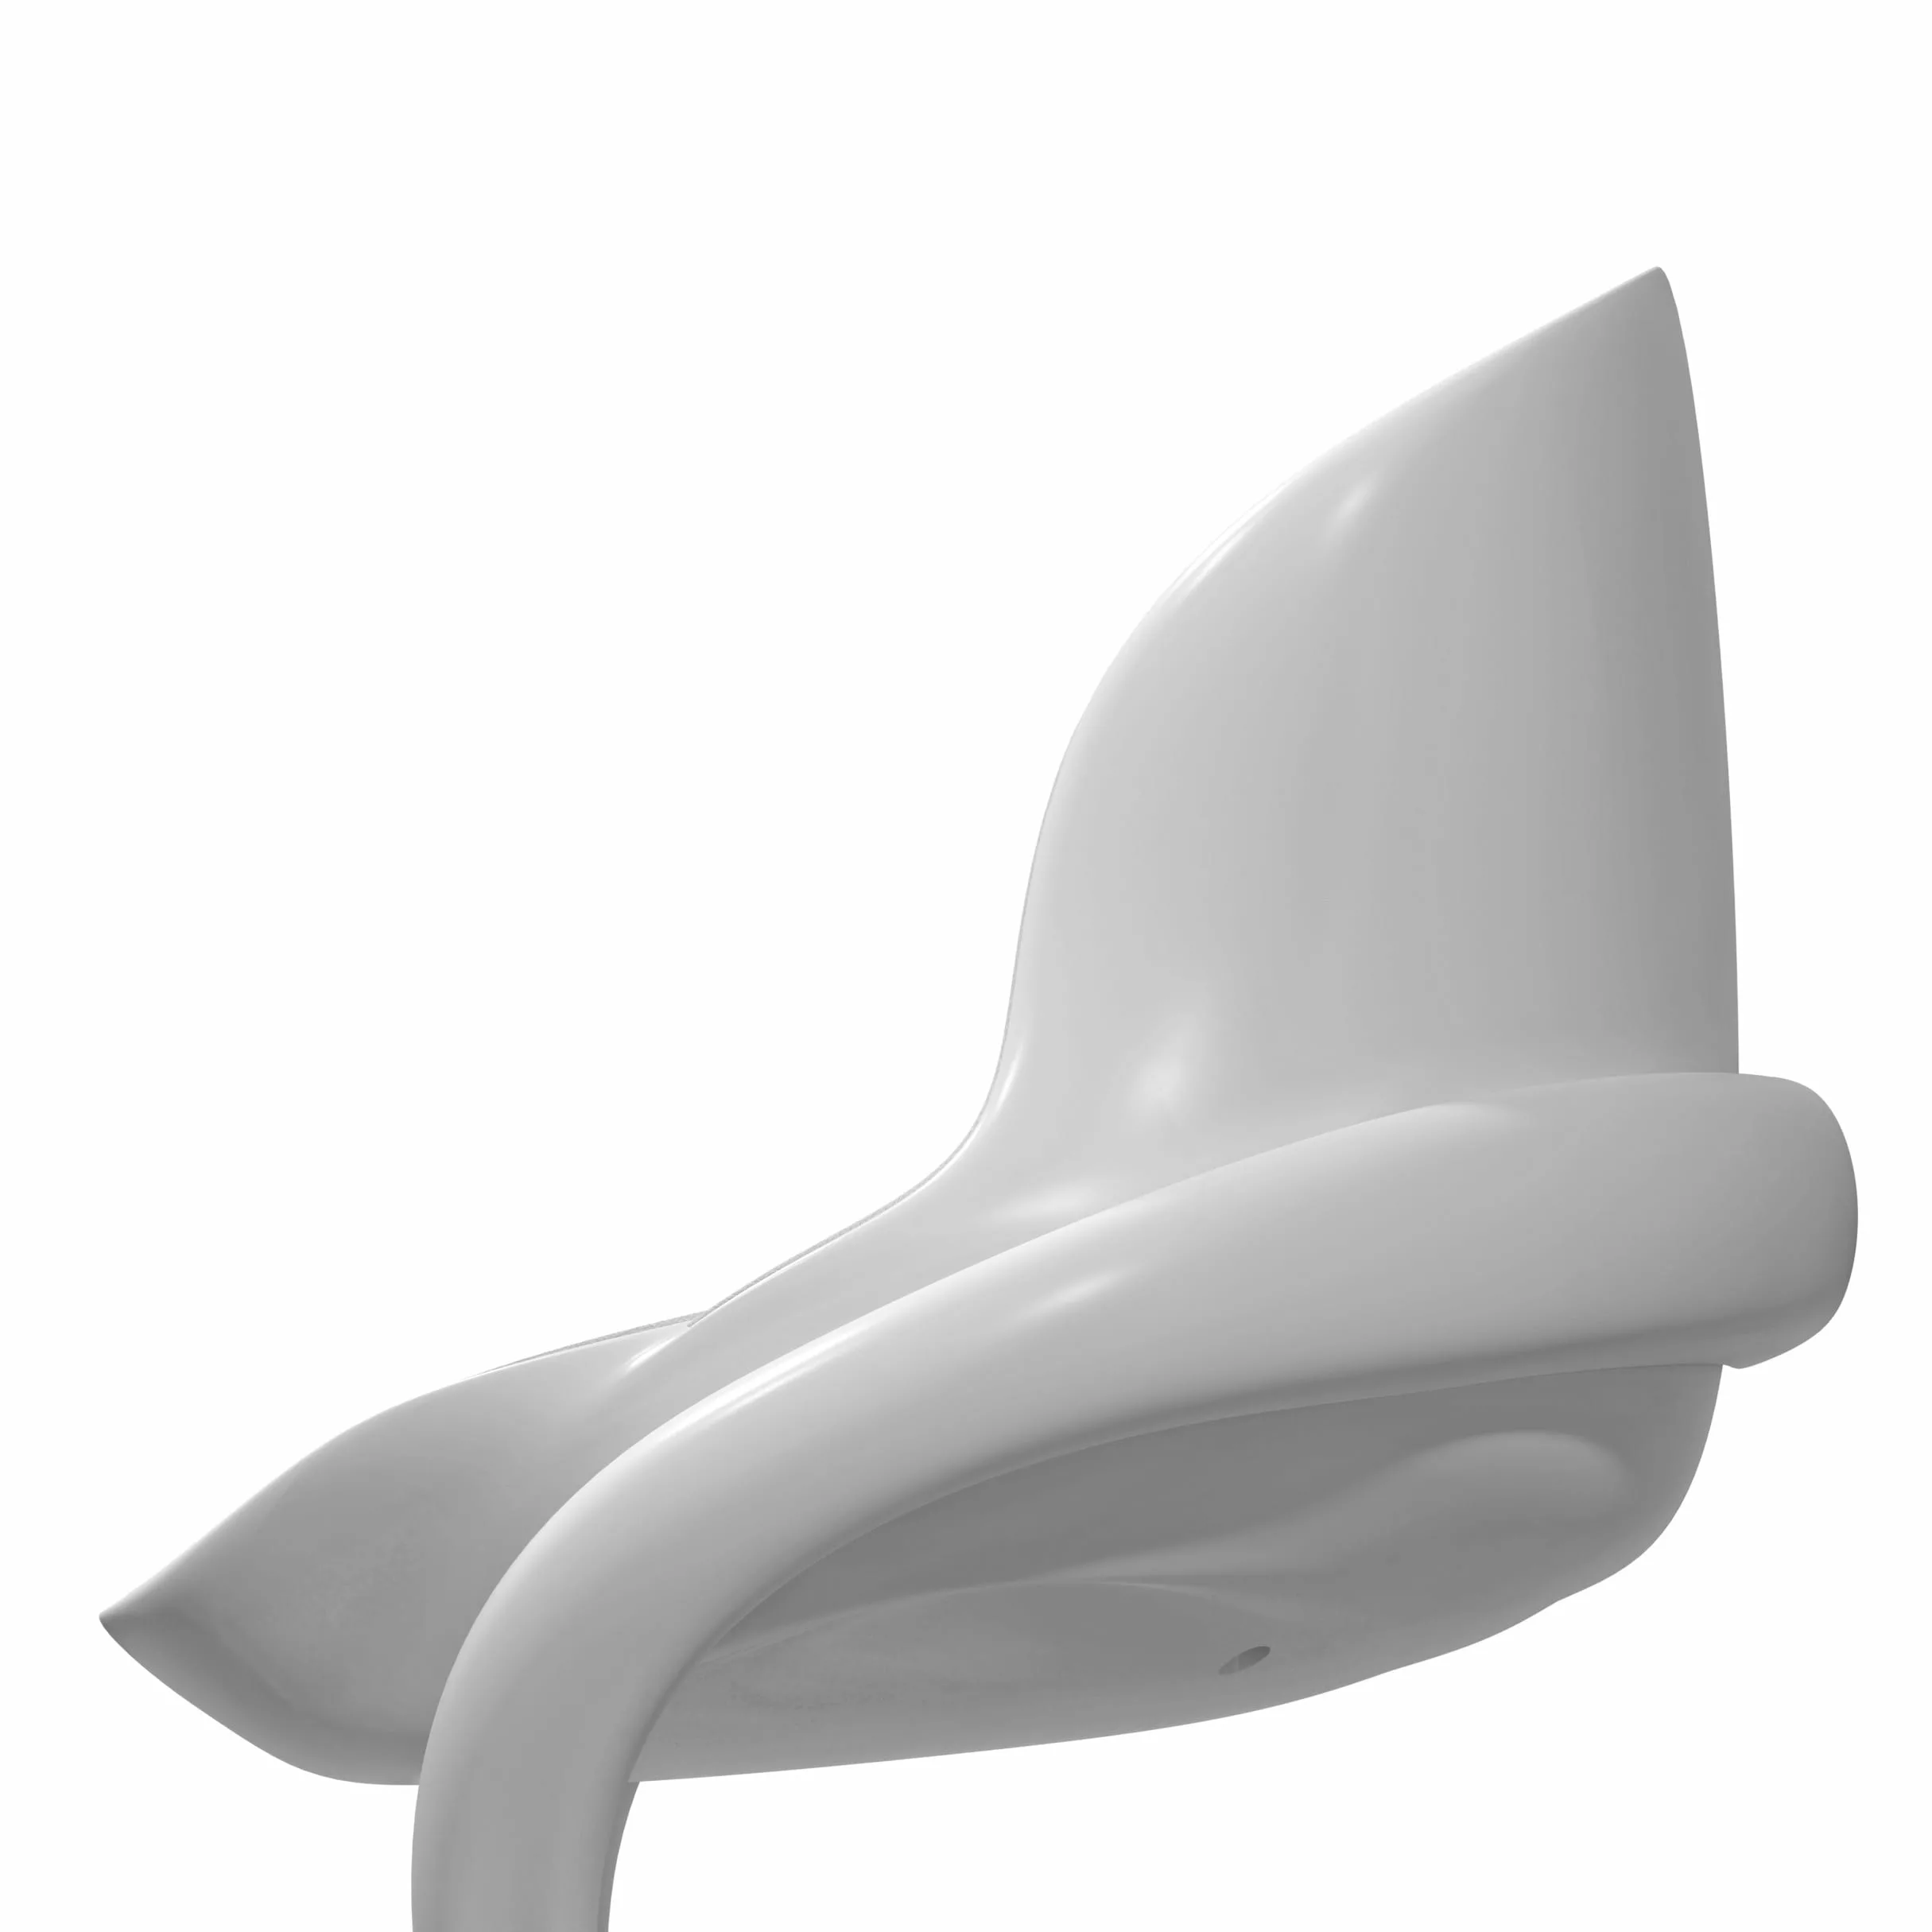 paul bruelle design gros plans vue de coté chaise cova blanche 08